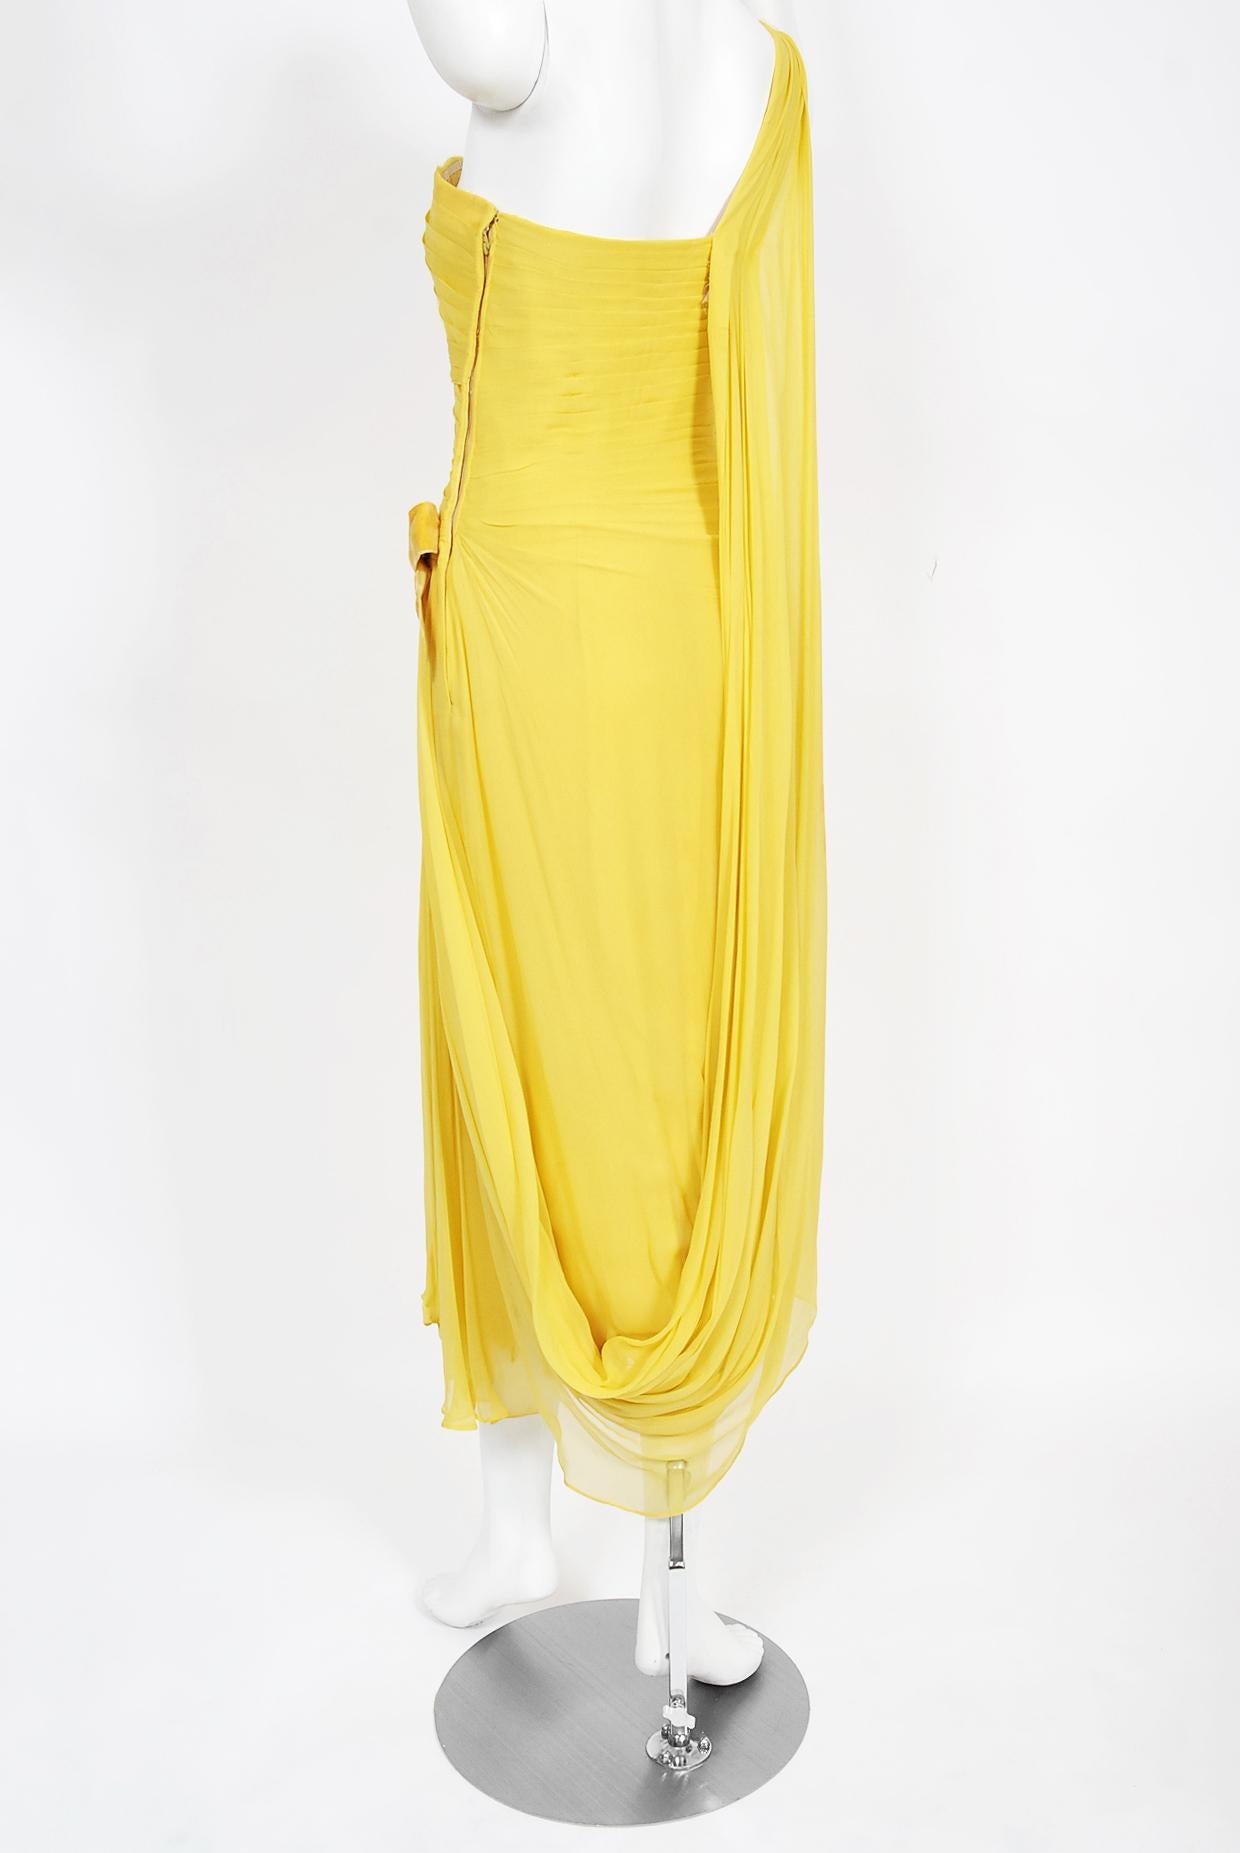 Philip Hulitar - Robe sablier drapée en mousseline de soie plissée jaune, vintage, années 1950 en vente 4